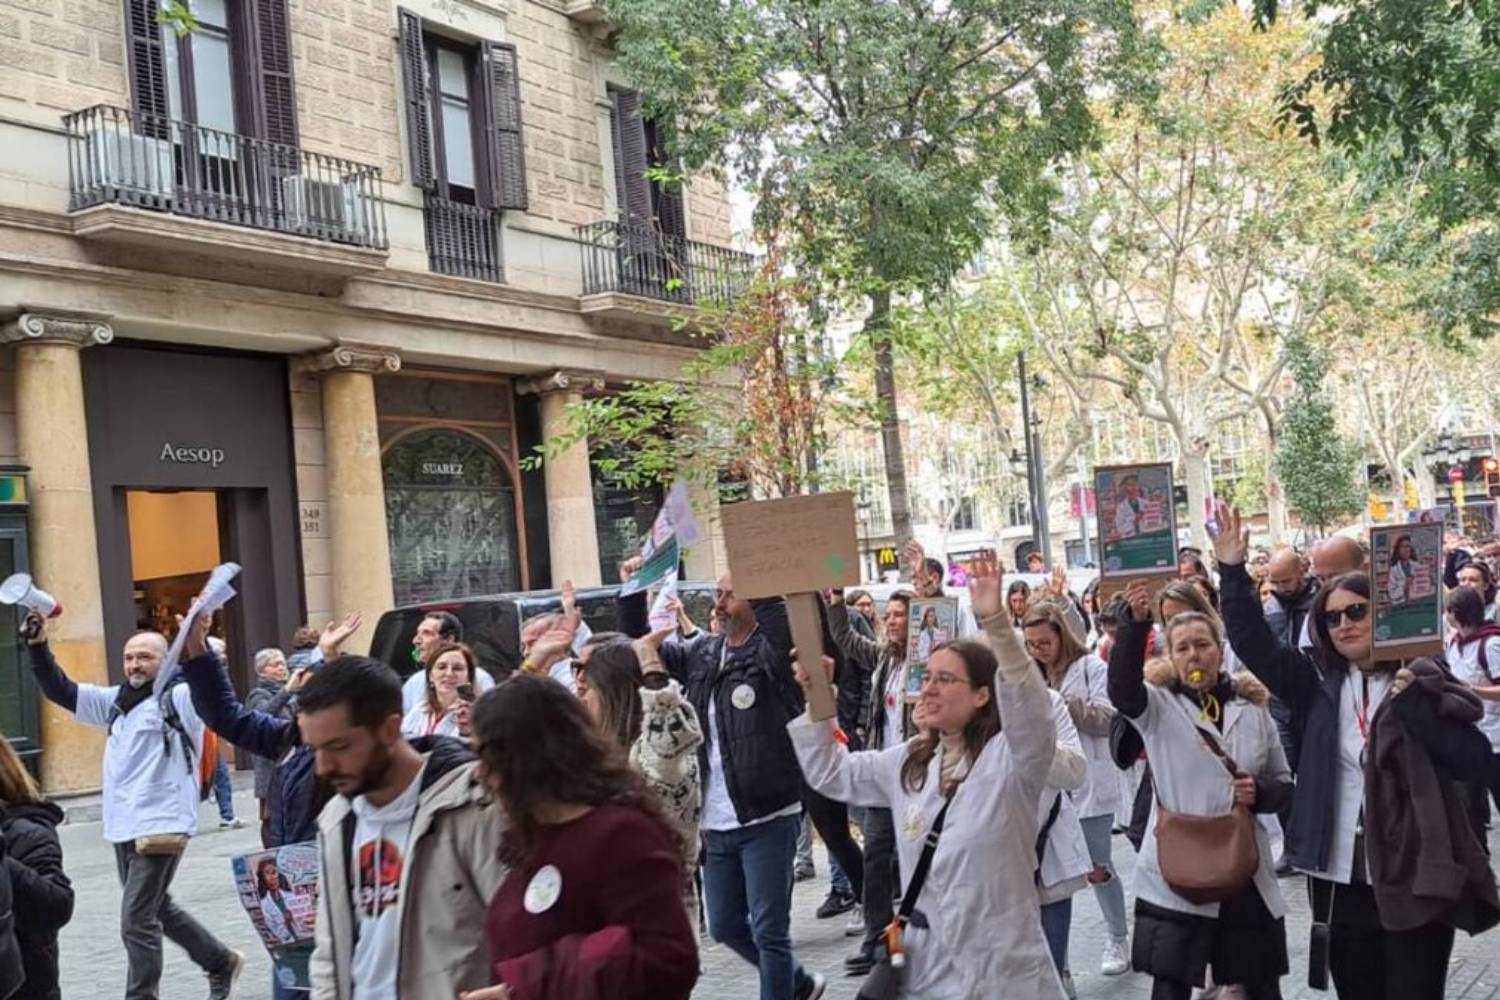 Afascat sacó a las calles de Barcelona el pasado mes de noviembre a unas 300 personas en protesta de las negociaciones del convenio de farmacias de la Ciudad Condal. Foto: AFASCAT. 